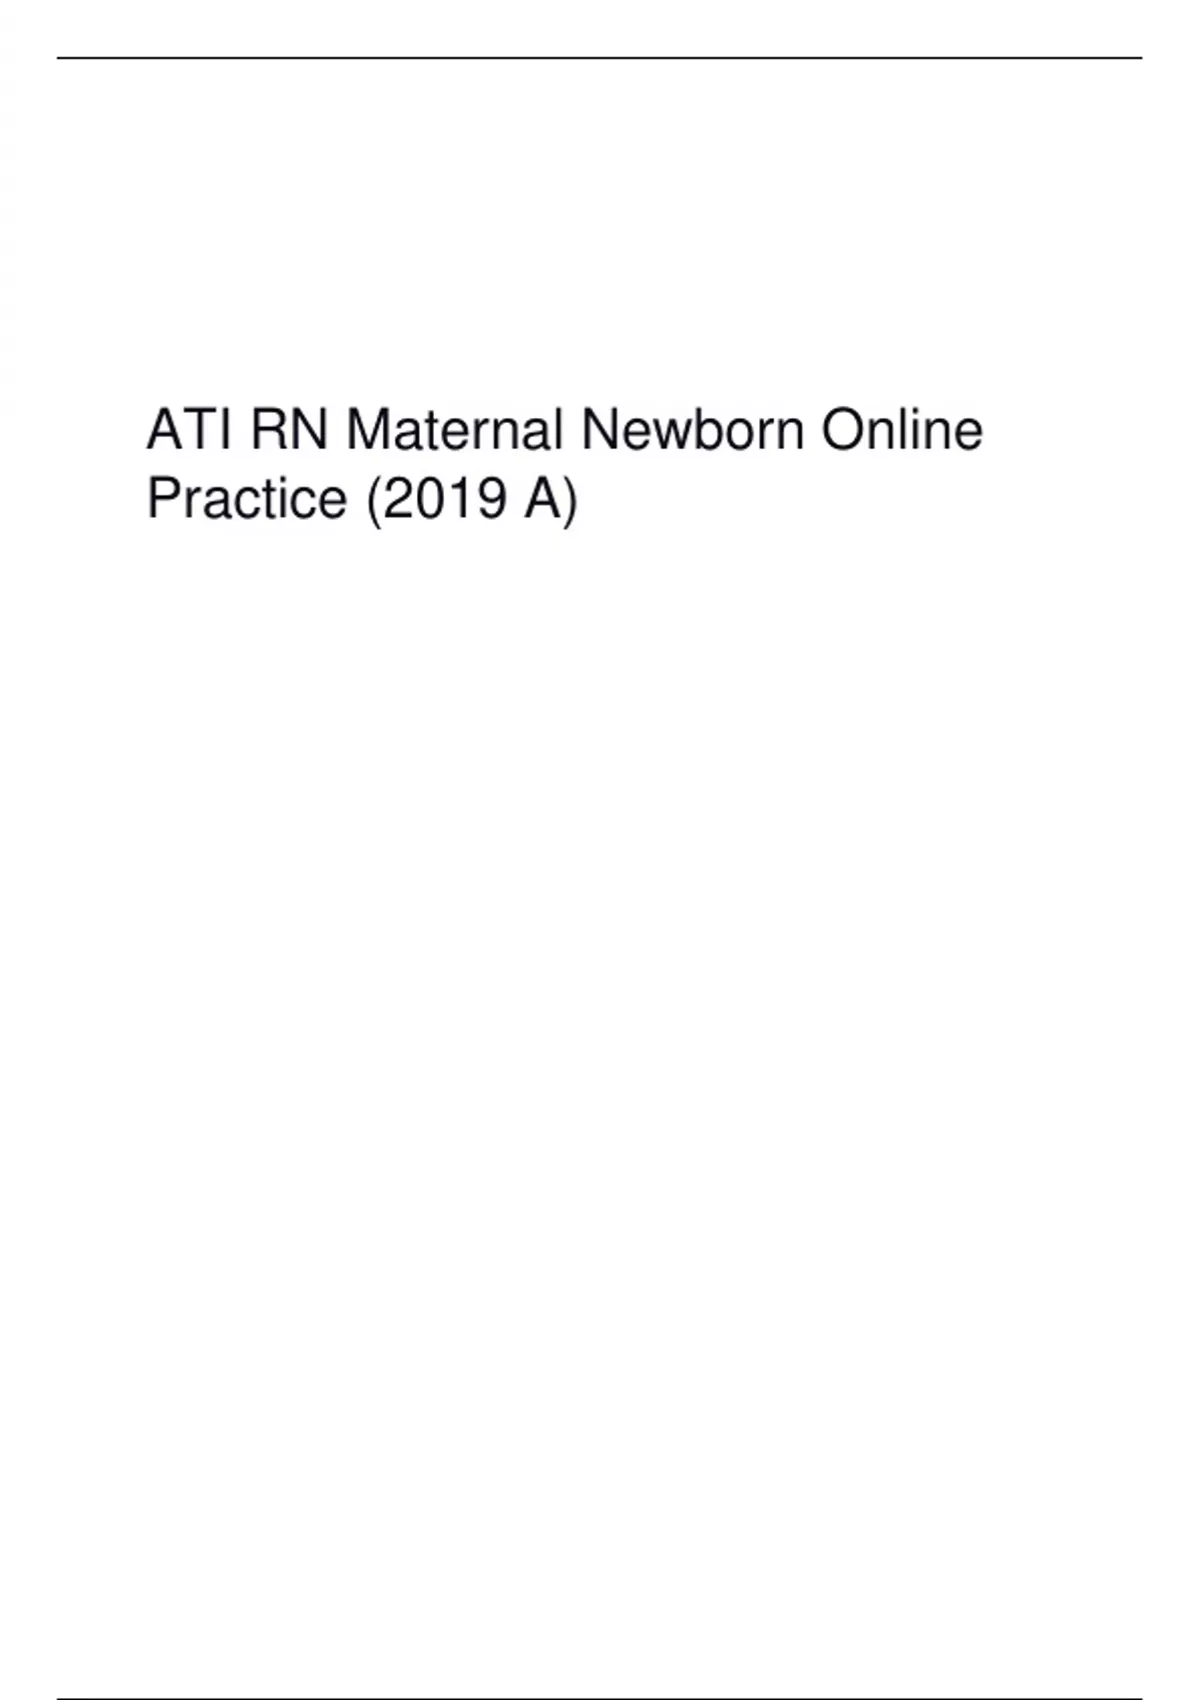 ATI RN Maternal Newborn Online Practice (2019 A).pdf ATI RN Maternal